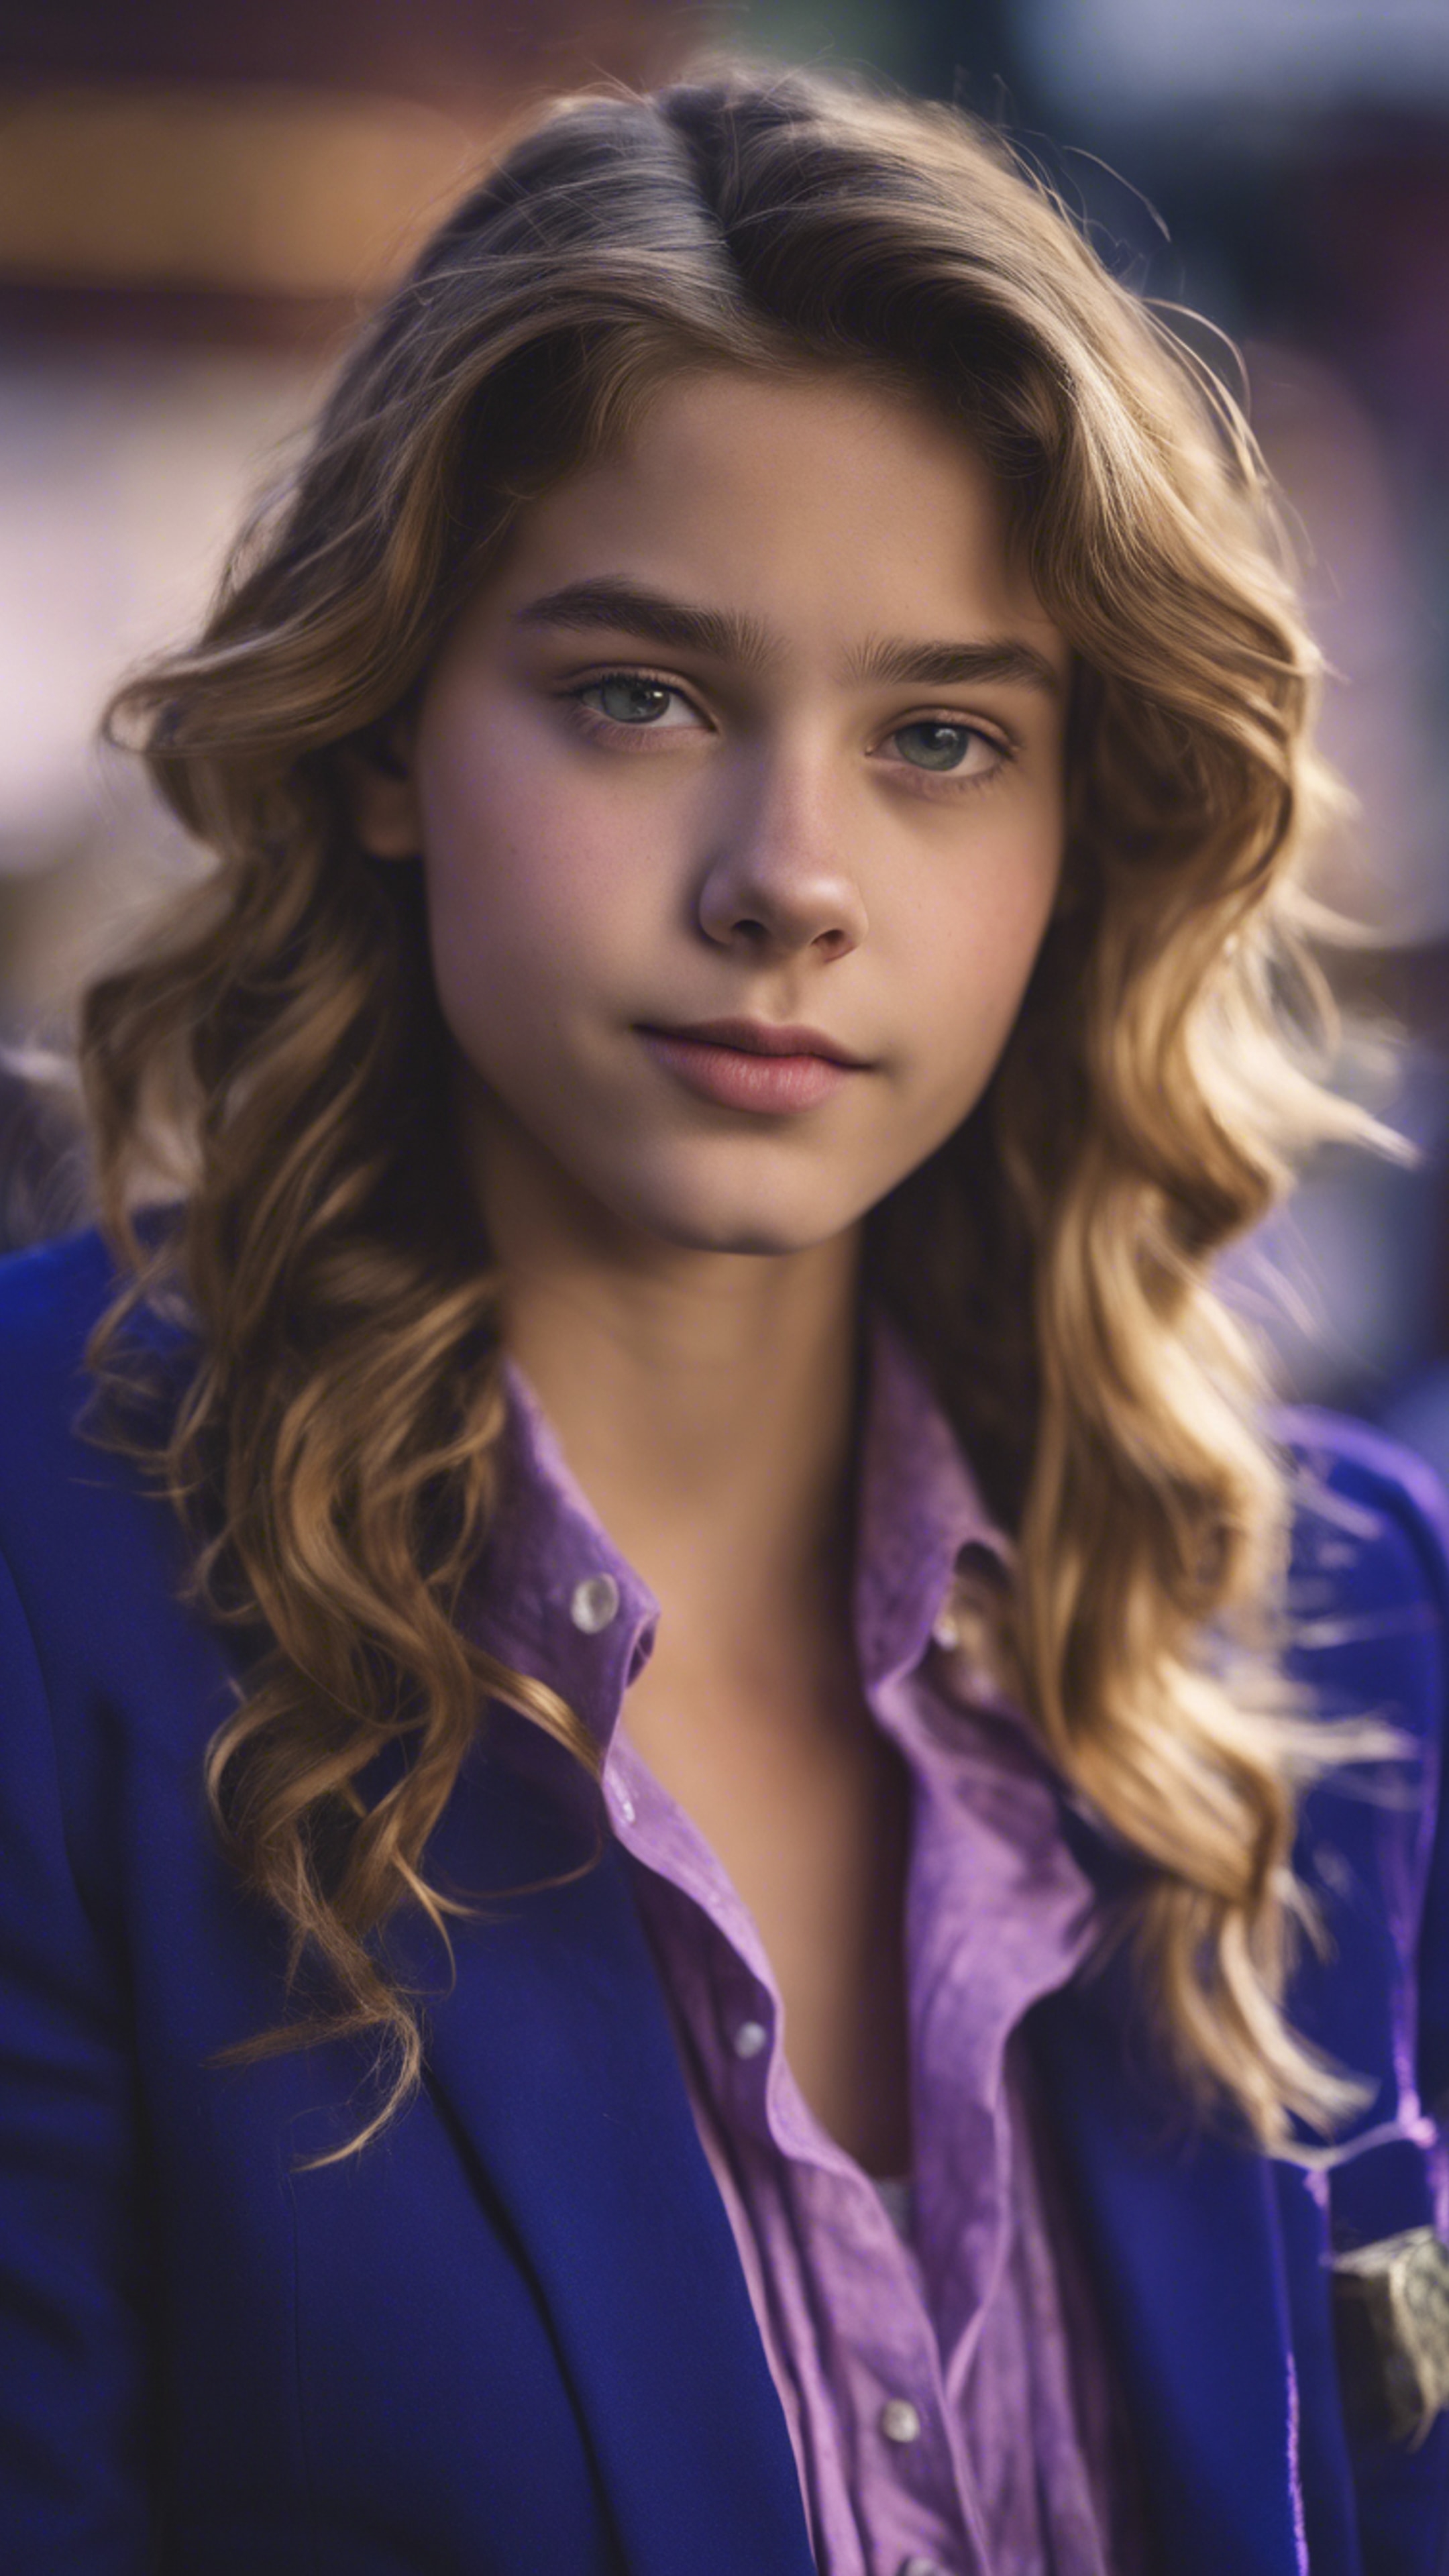 A preppy teenage girl wearing a royal blue blazer with purple button-down shirt. Wallpaper[785e4ff270ea4e79b652]